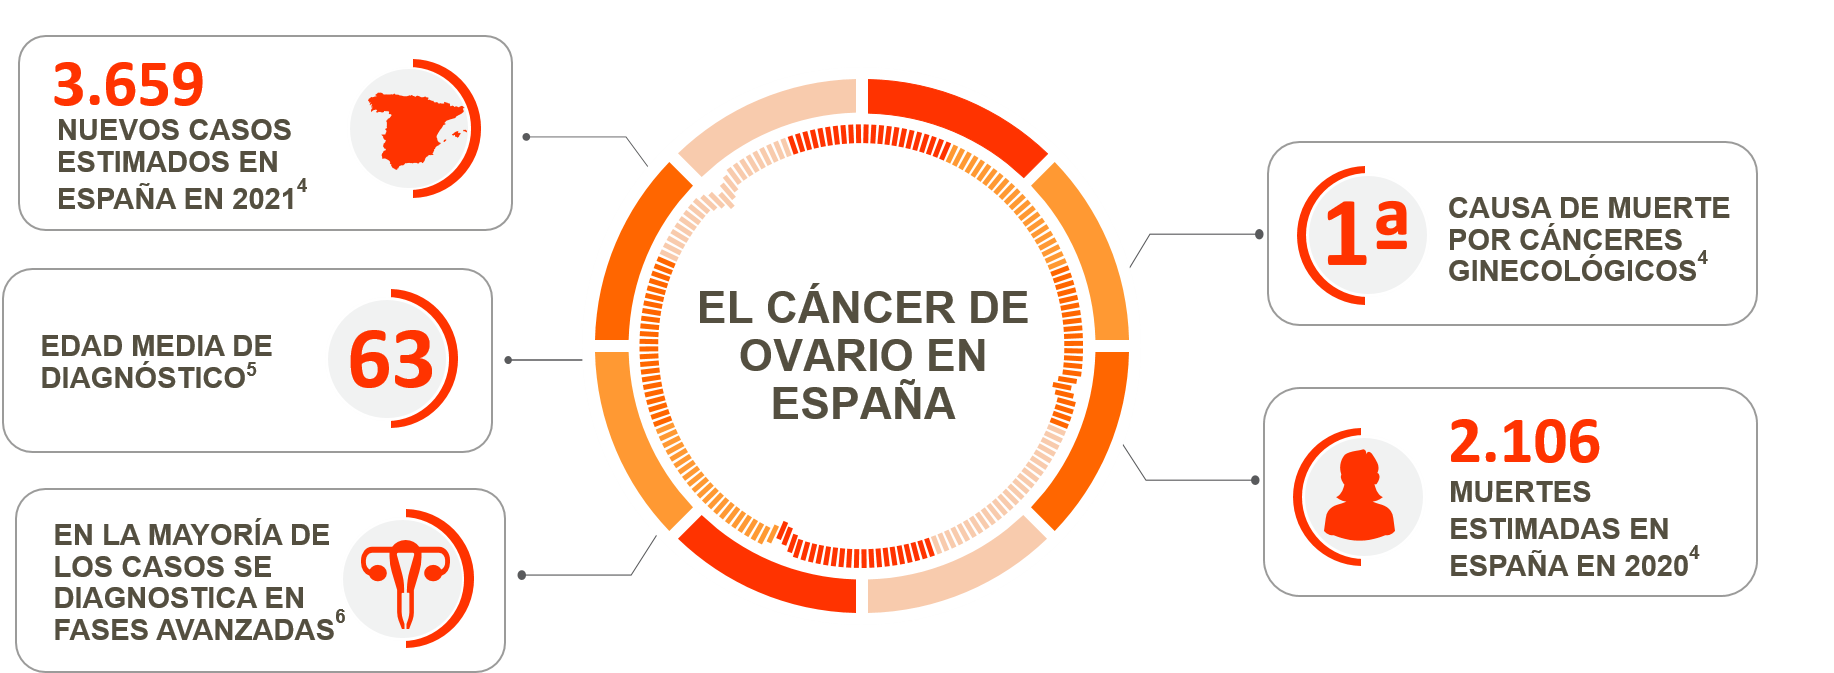 Epidemiología del cáncer de ovario en España